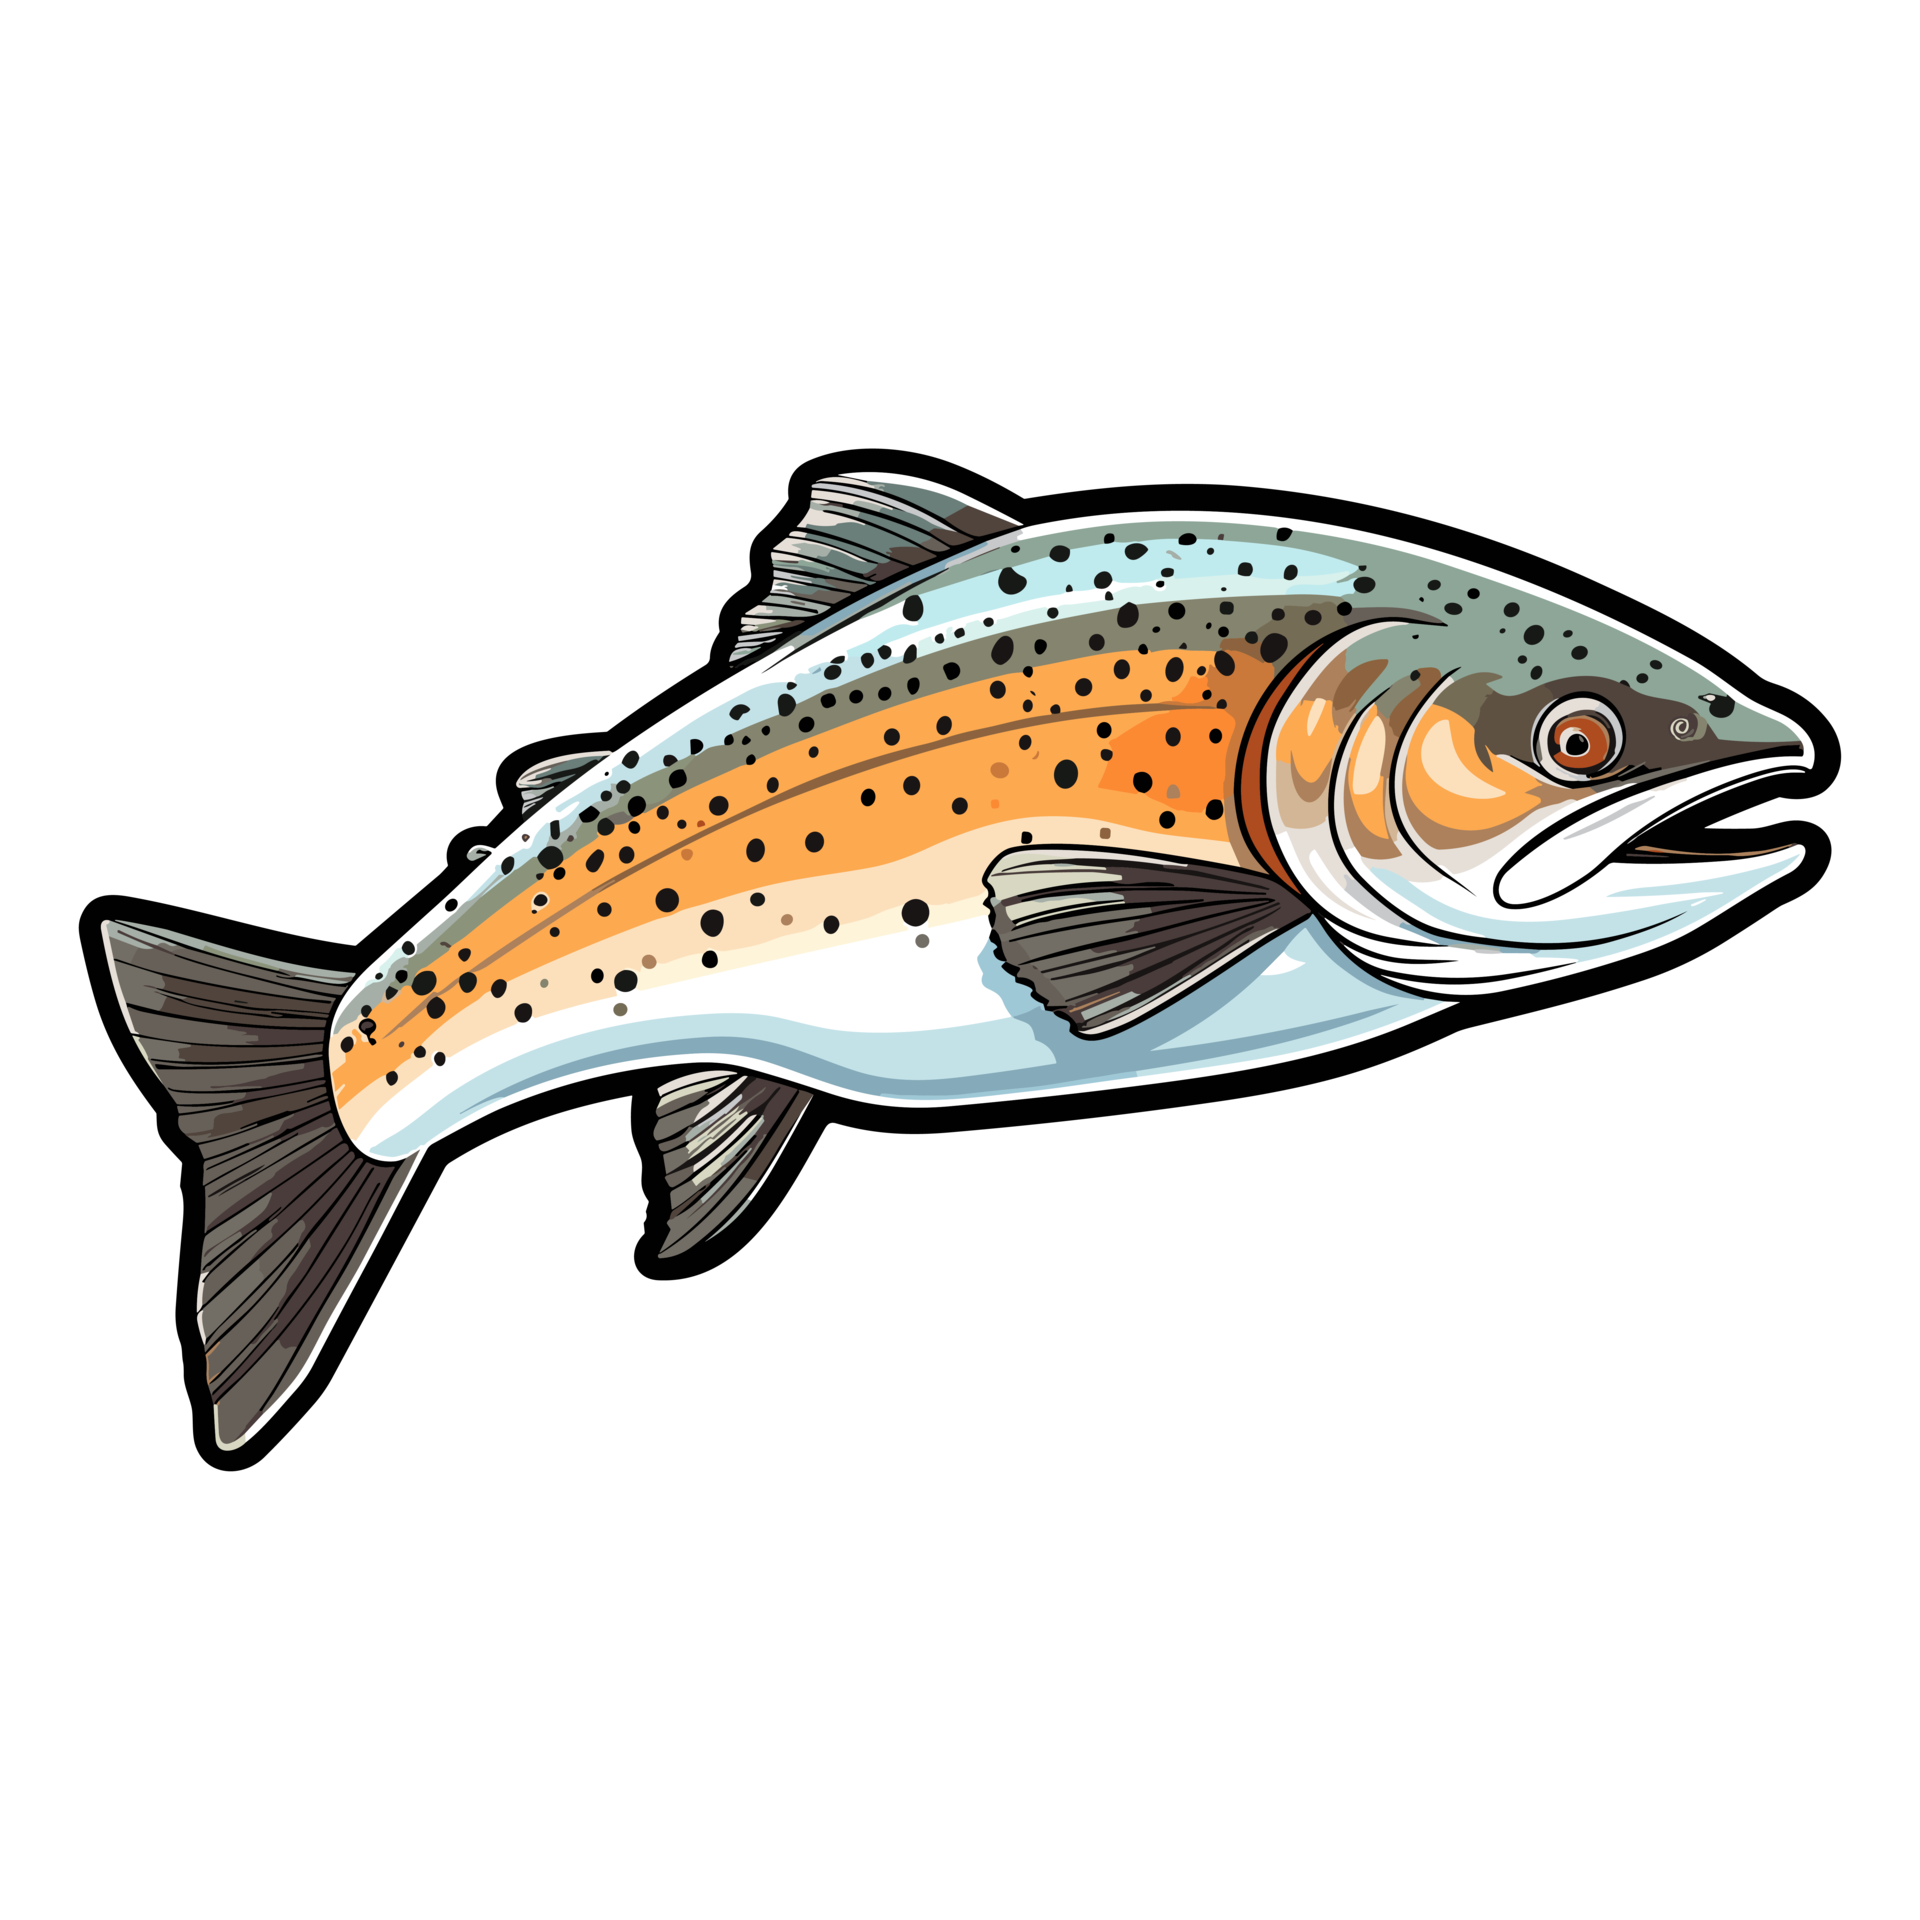 Trout fish illustration, Jumping fish, freshwater sportfishing